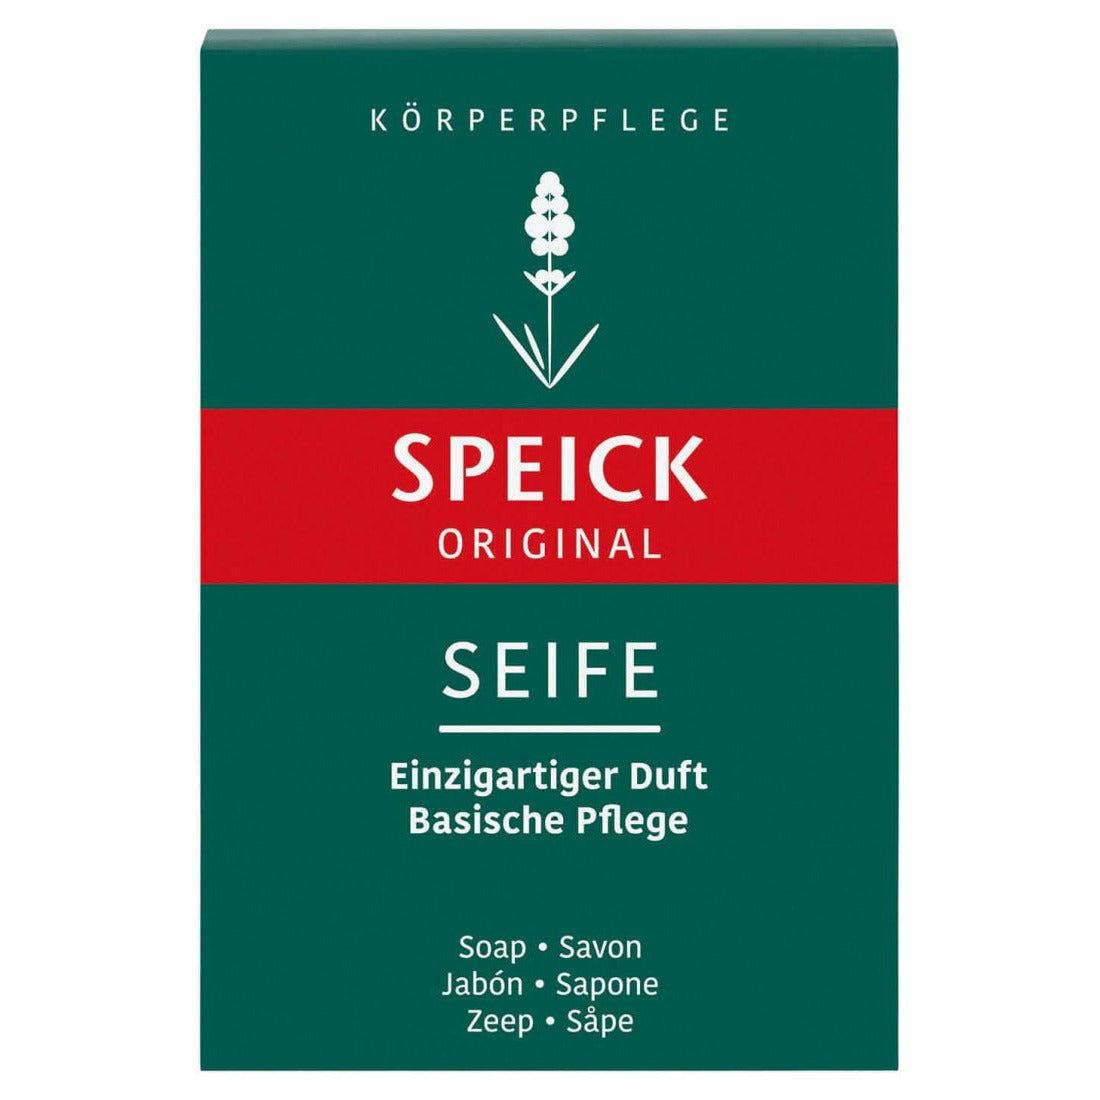 Speick Original Seife - 100 g - bce-naturkosmetik